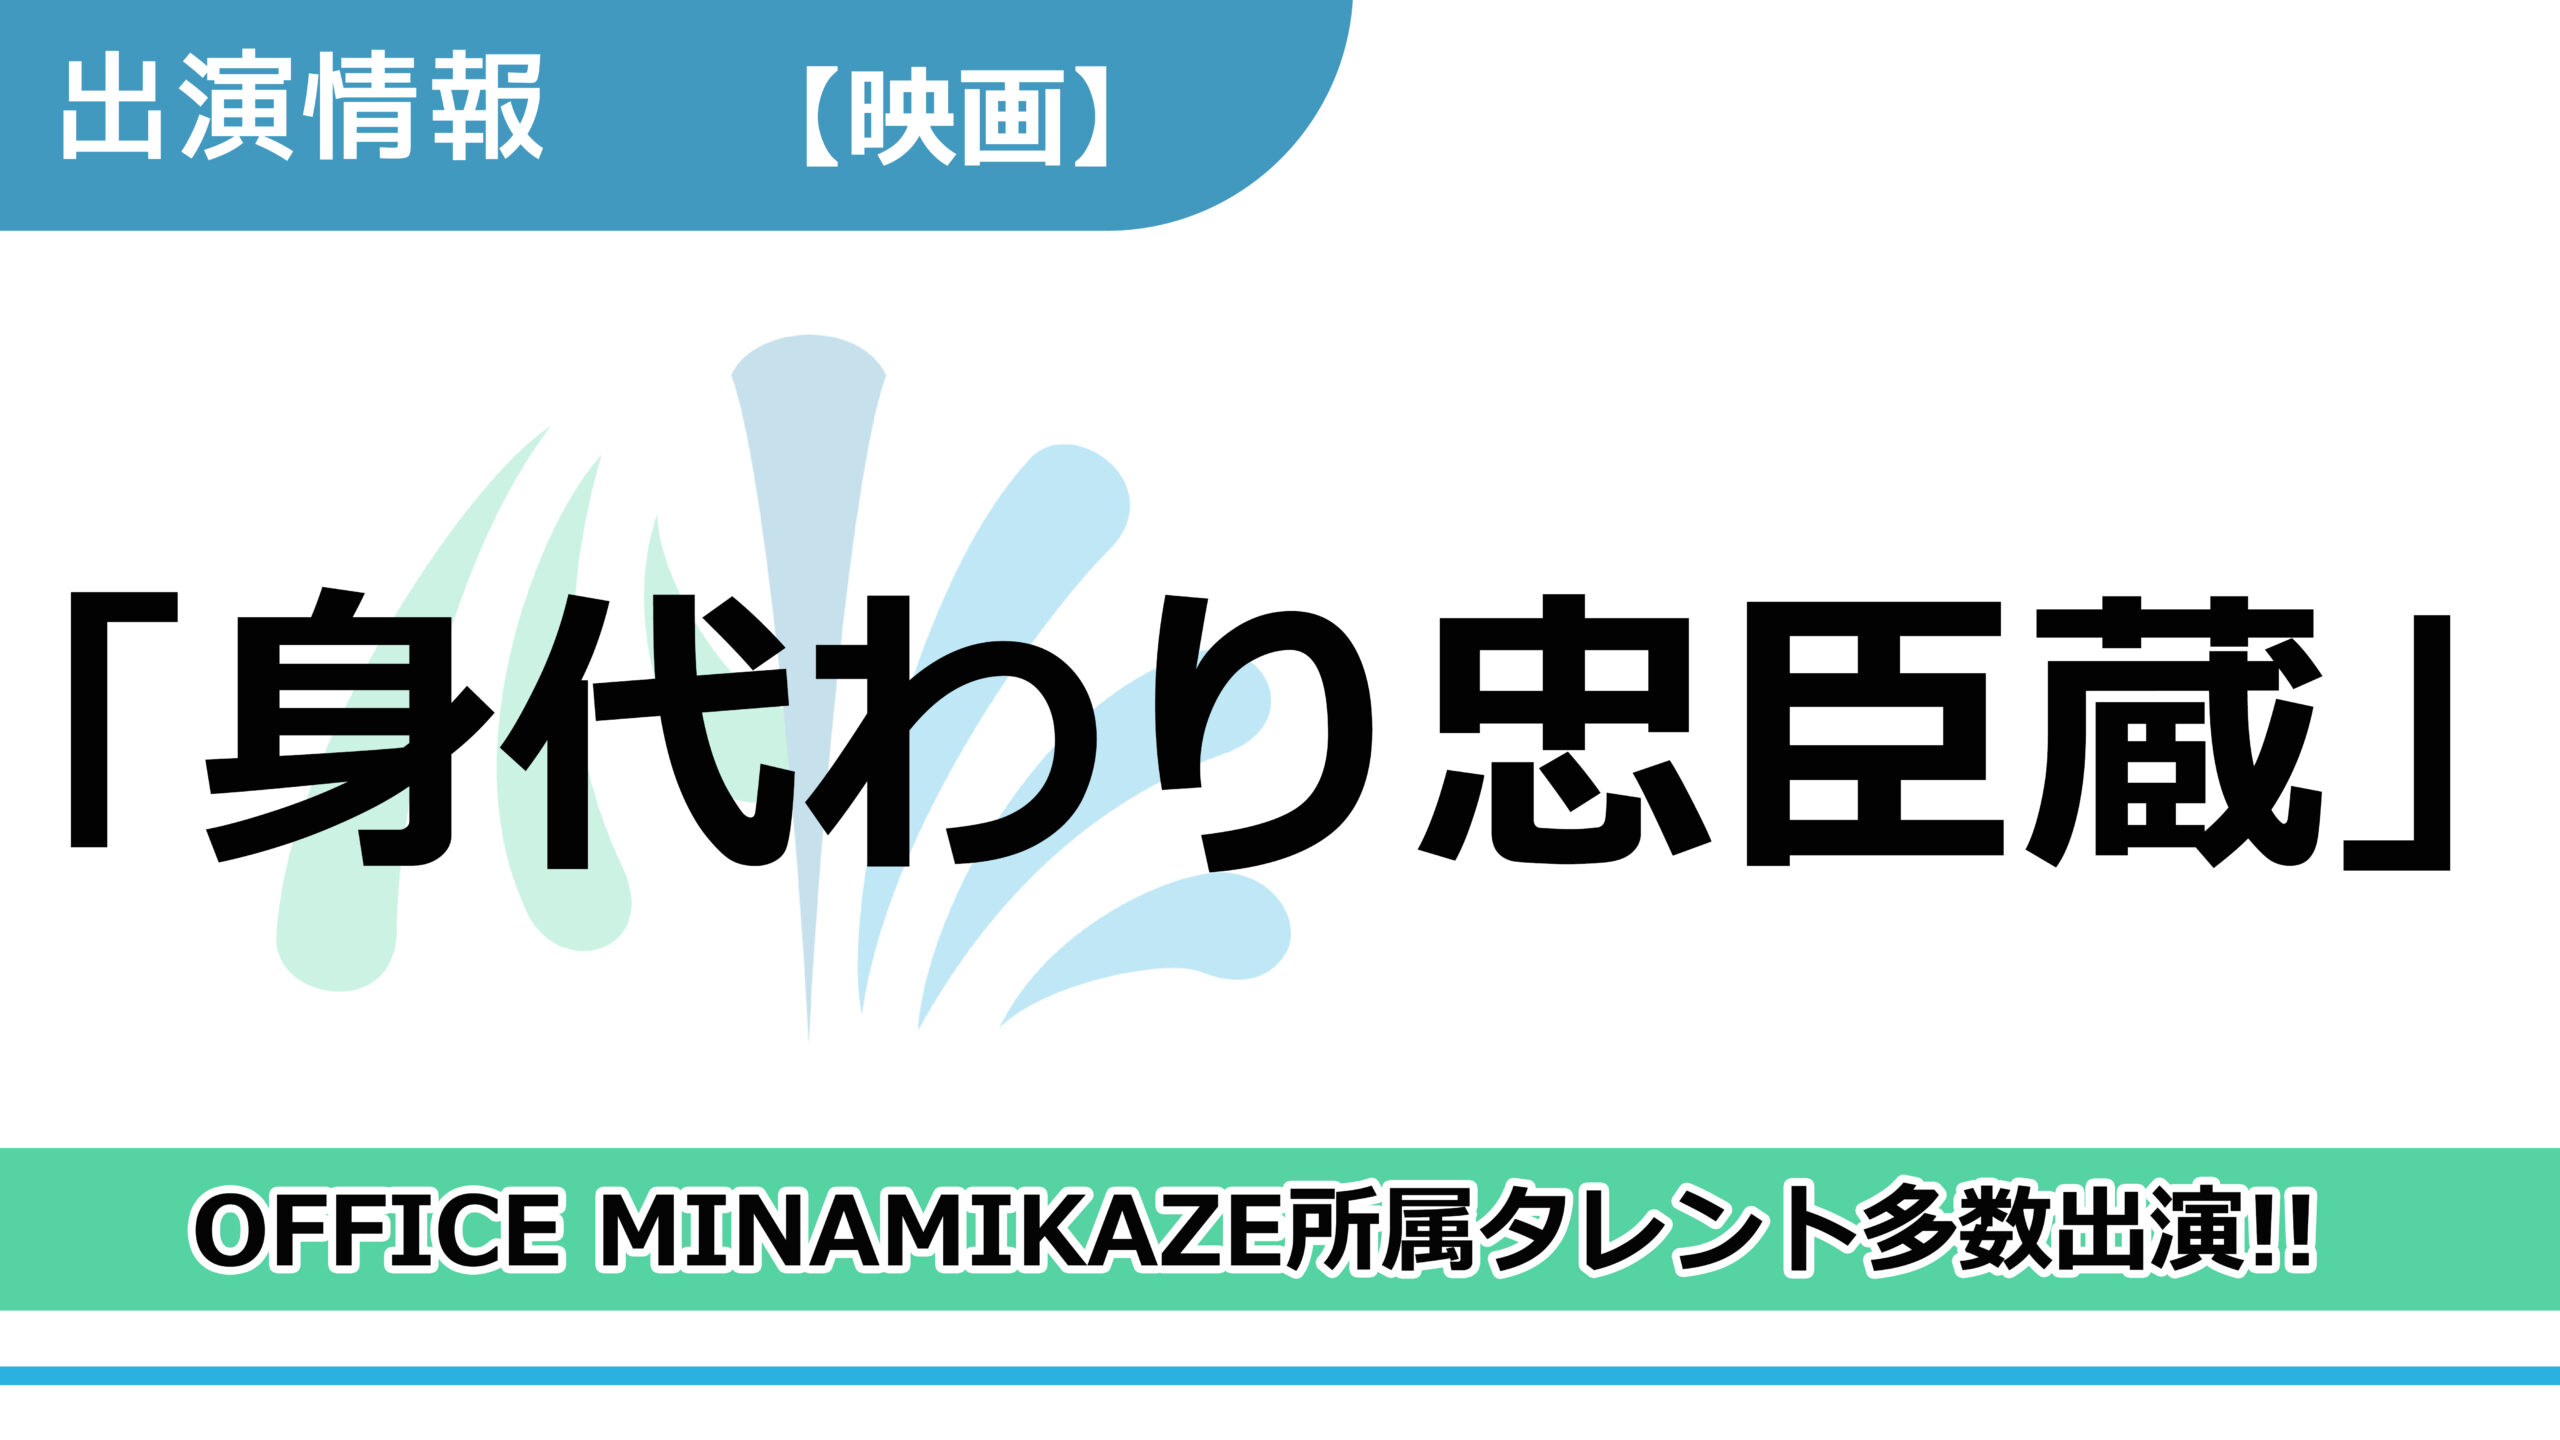 【出演情報】OFFICE MINAMIKAZE所属タレント多数出演 / 映画「身代わり忠臣蔵」